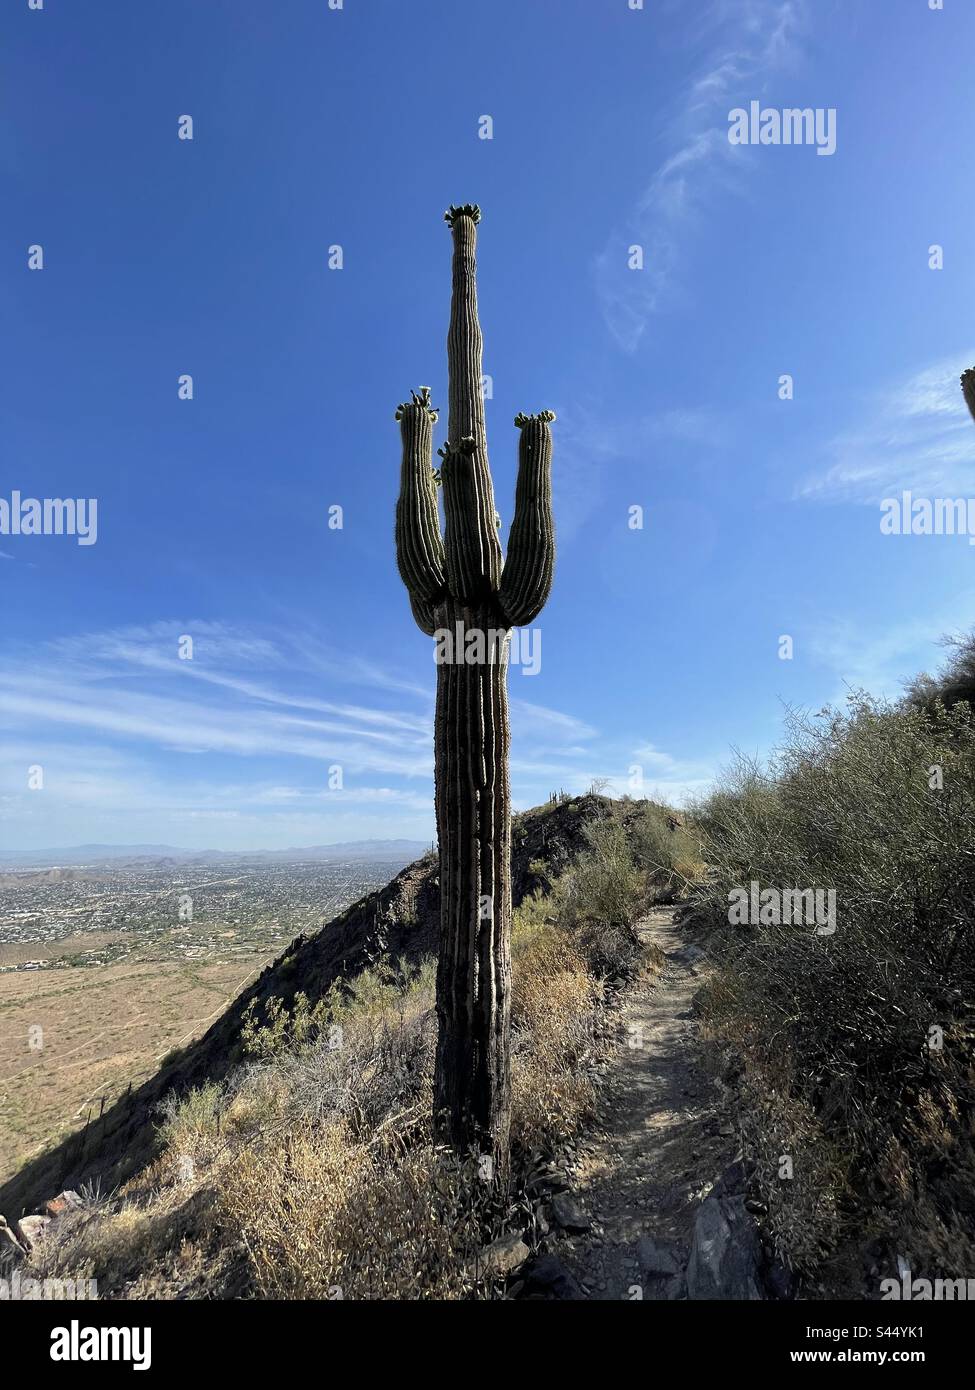 Saguaro géant, bras de cactus recouverts de couronnes de fruits, sentier de pic à deux bits, vue sur le nord de Phoenix, ciel bleu avec des nuages wispy, désert de Sonoran, réserve des montagnes de Phoenix, Scottsdale, Arizona Banque D'Images